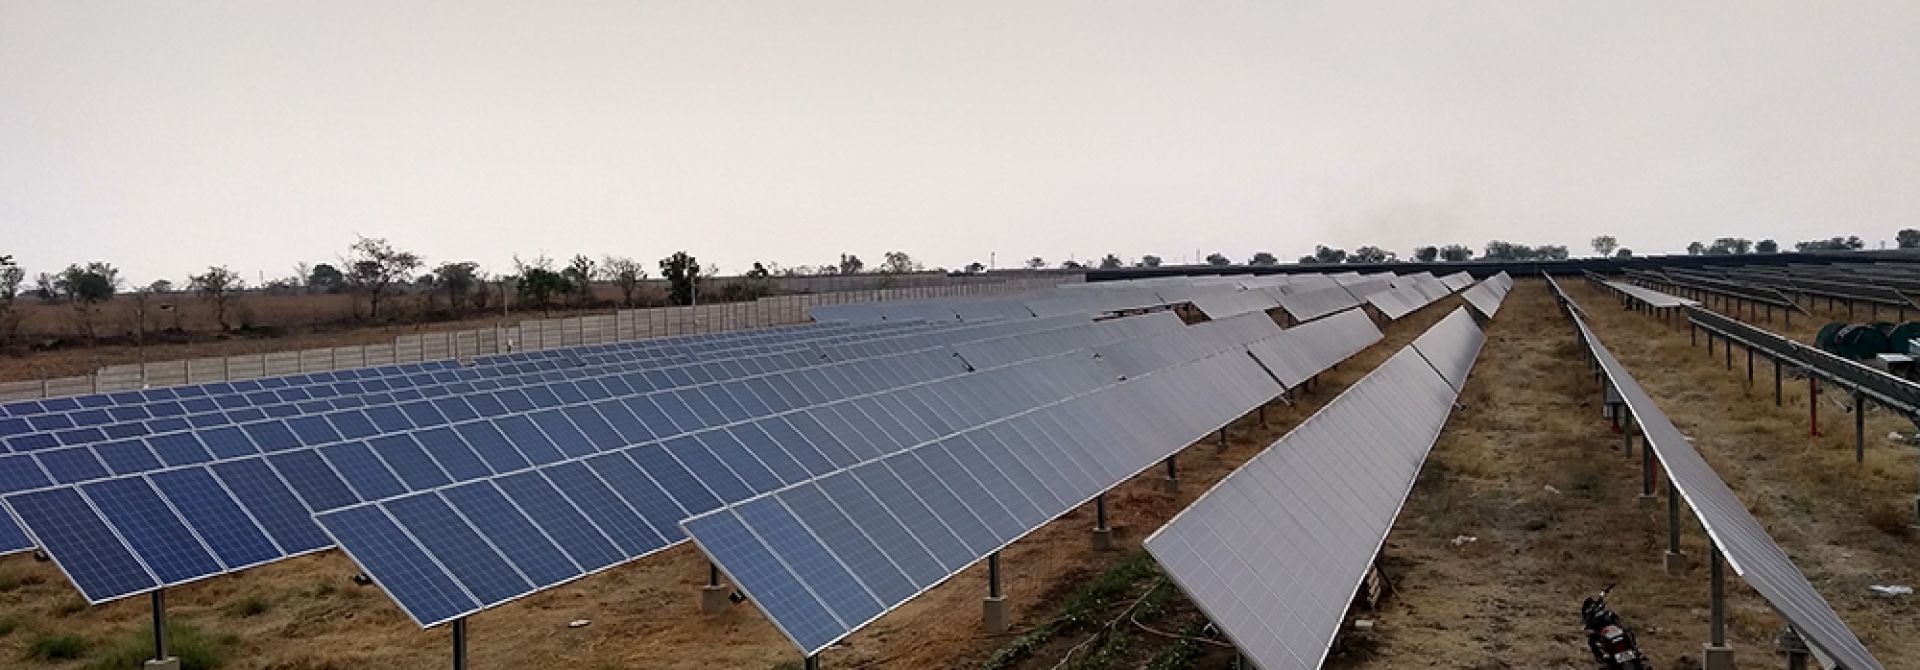 Mahindra Solar Power, India